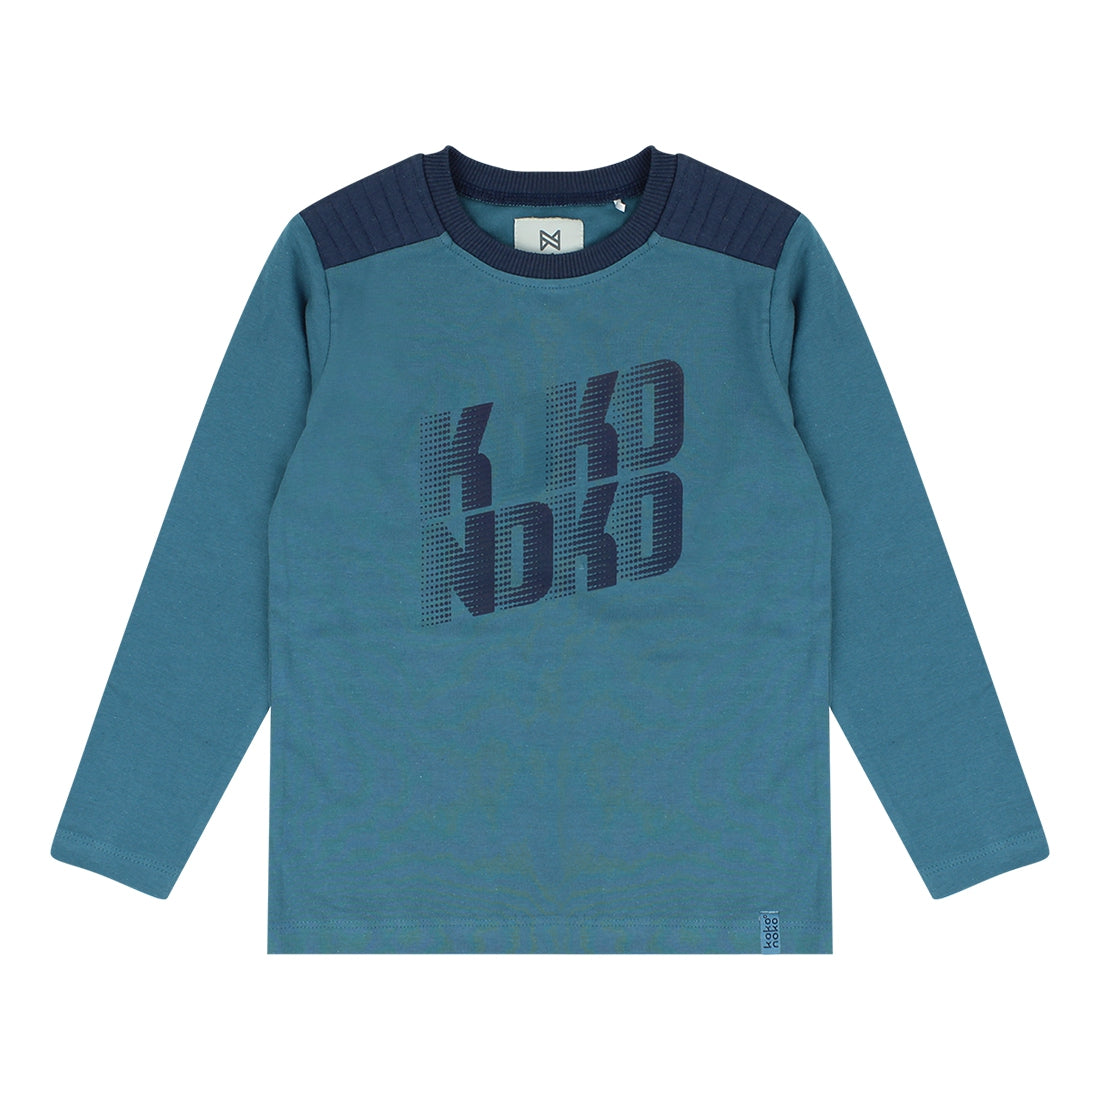 Jongens T-shirt longsleeve van Koko Noko in de kleur Blue in maat 128.